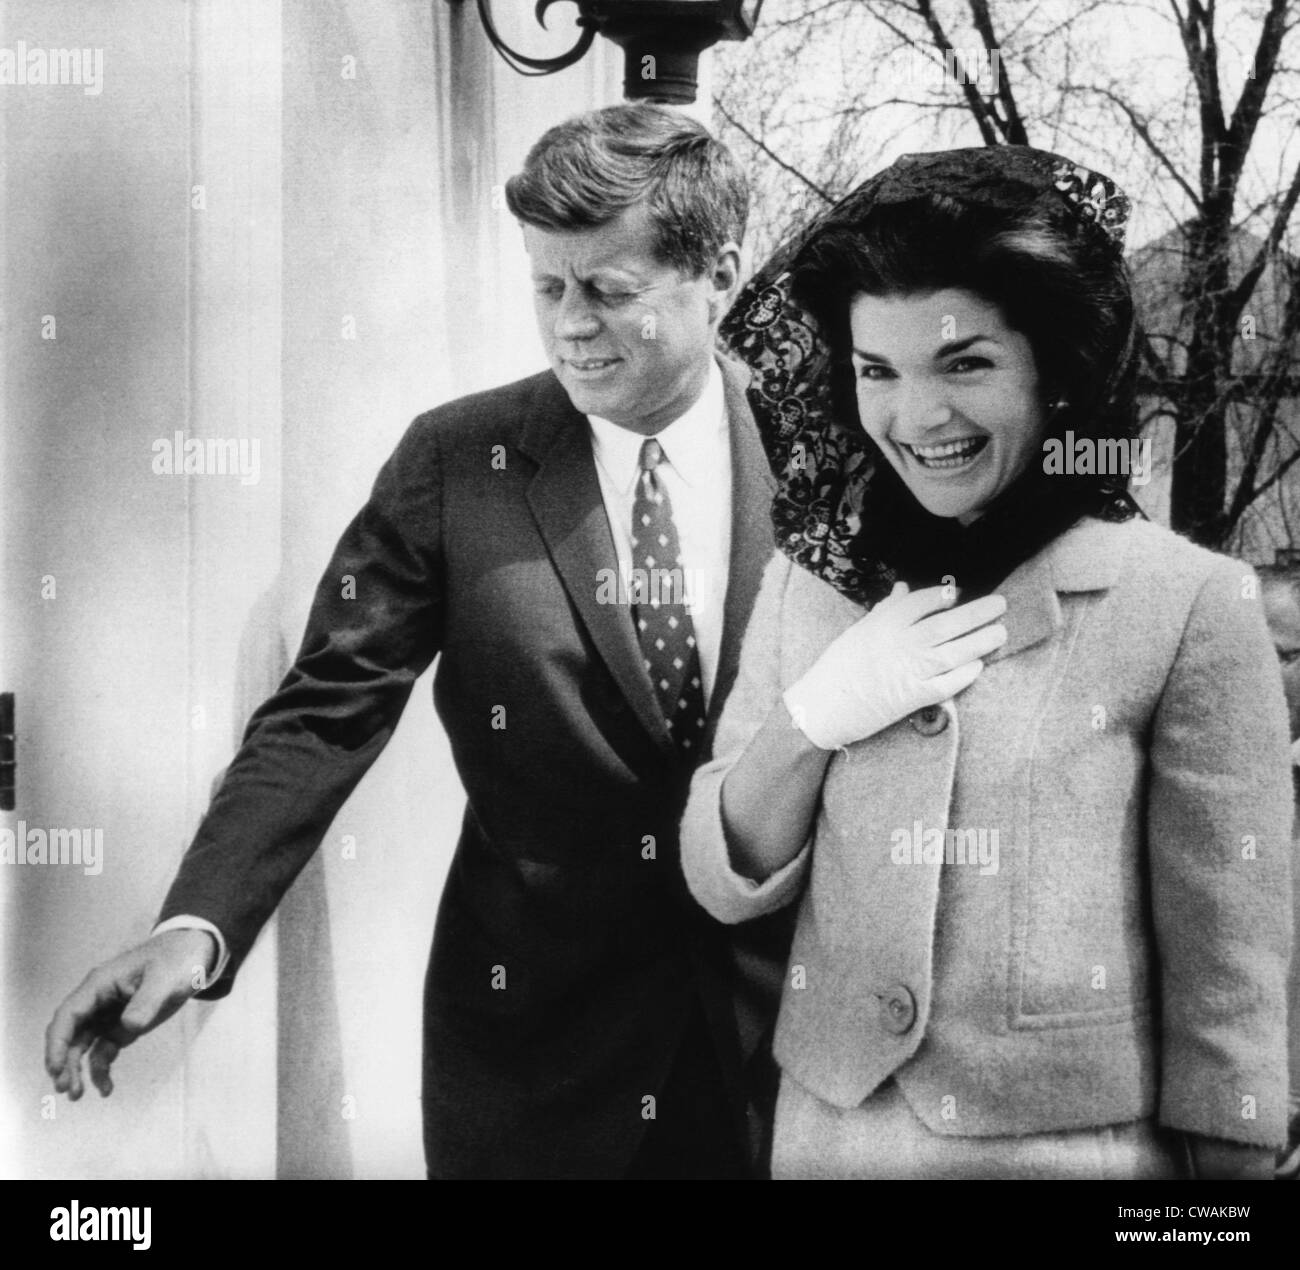 John F. Kennedy, Jacqueline Kennedy, arrivant à Middleburg Centre Communautaire pour la masse, Charlottesville, Virginie, le 1 avril, 1962. Banque D'Images